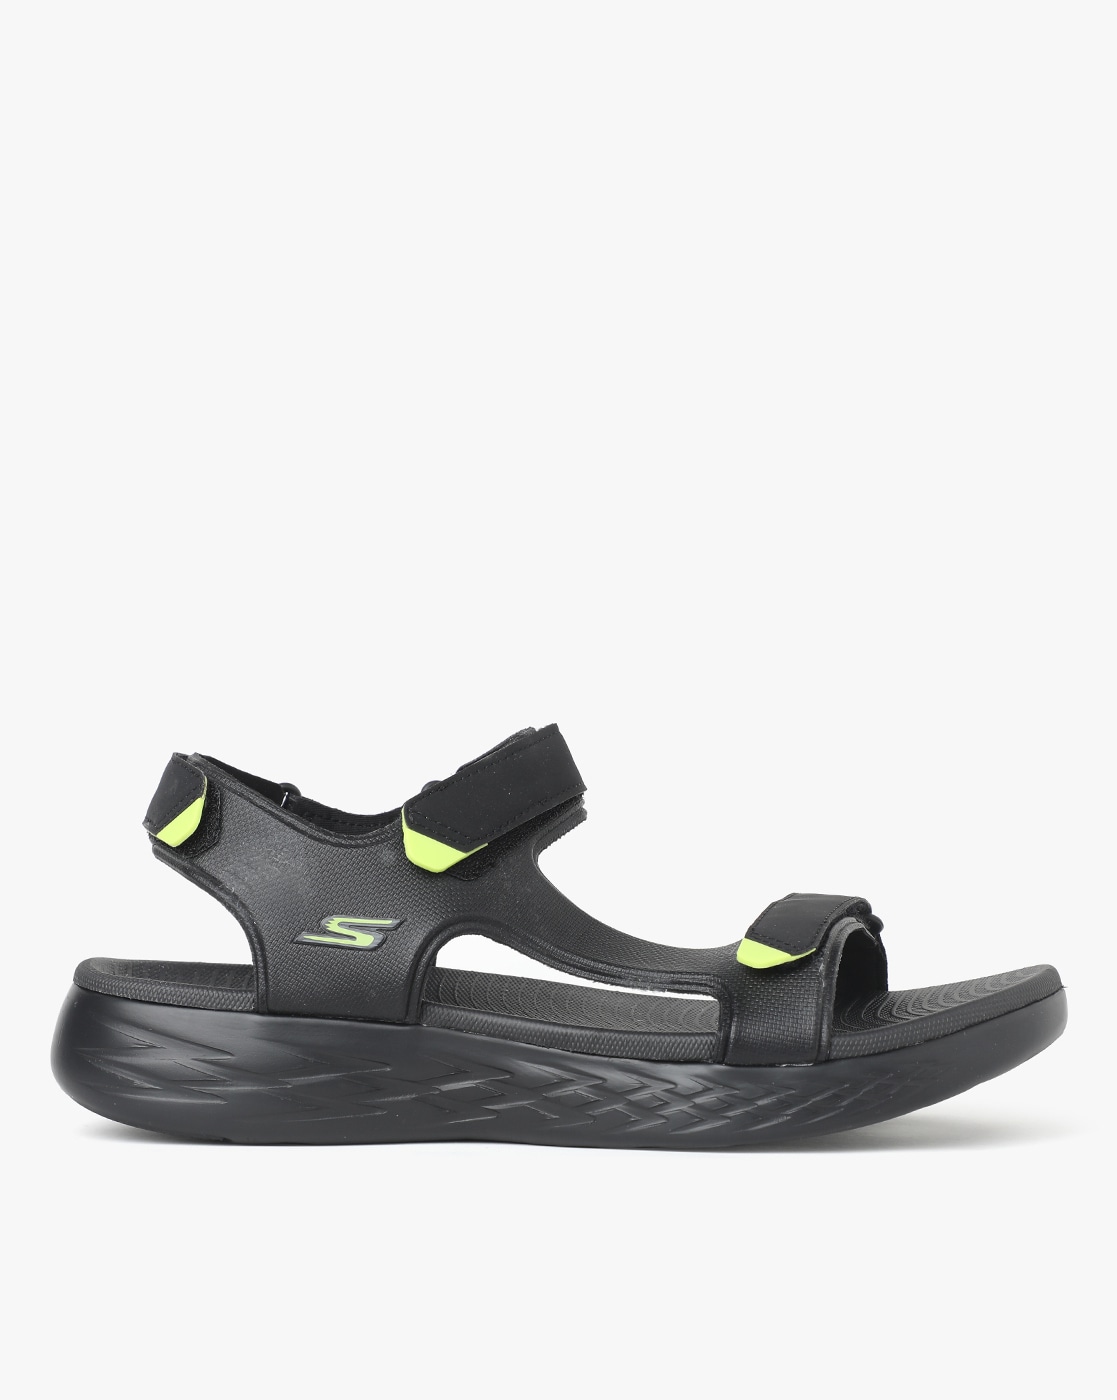 skechers sandals india